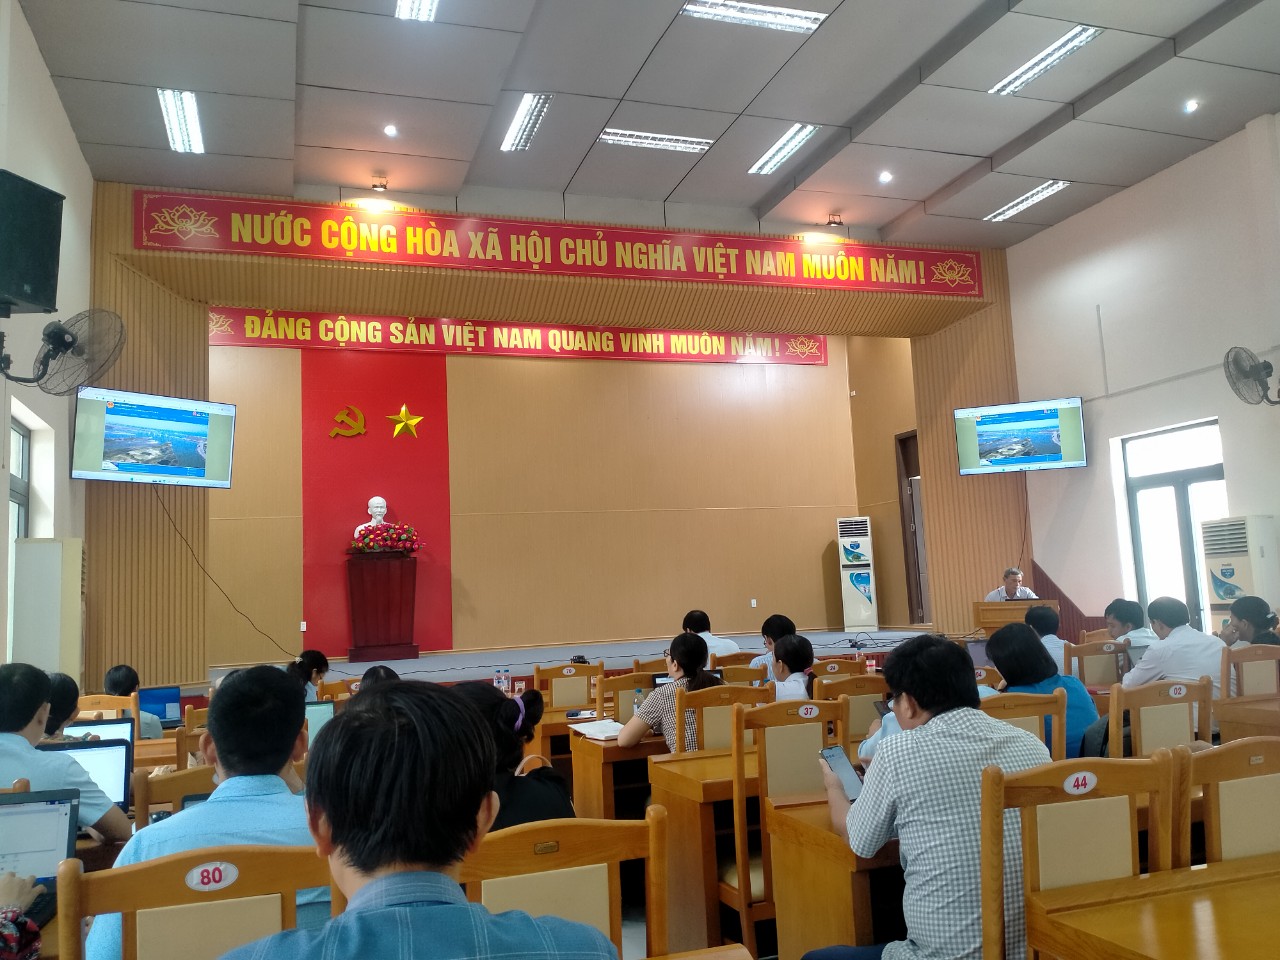 Đồng chí Huỳnh Quang Trung, Phó Trưởng phòng CCHC sở Nội Vụ hướng dẫn khai thác, sử dụng phần mềm chấm điểm Chỉ số cải cách hành chính